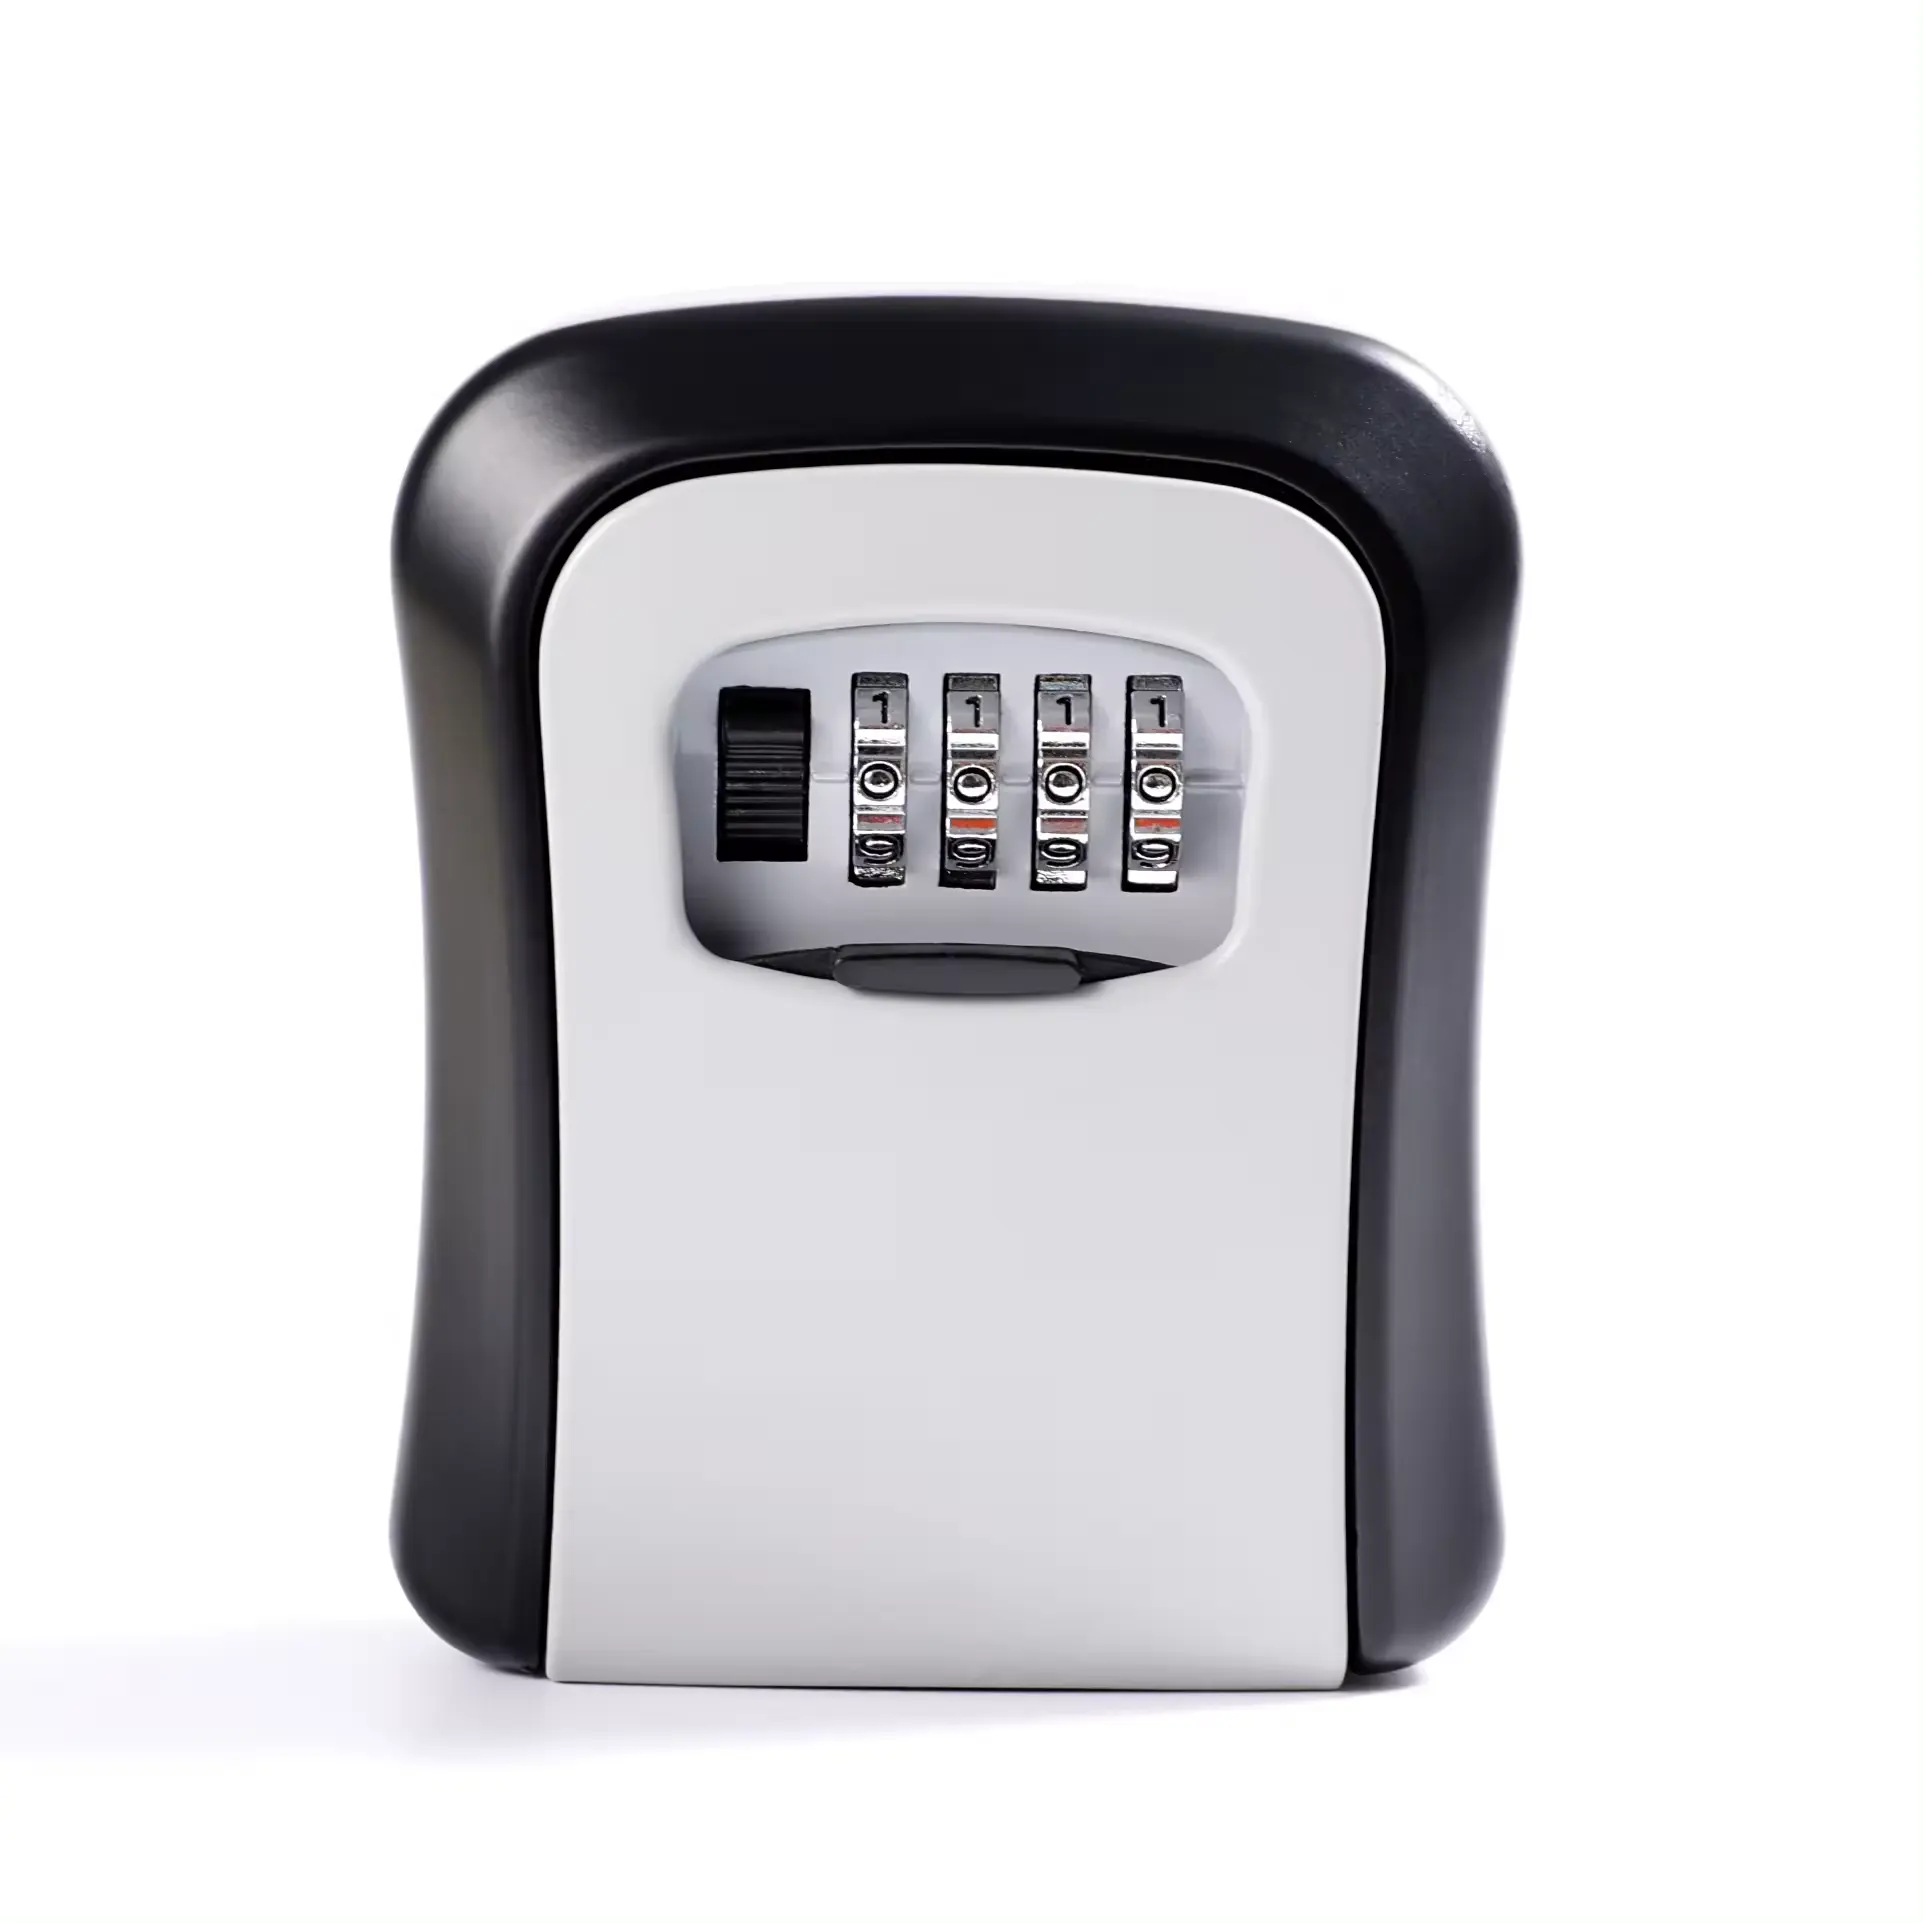 صندوق أمان مفتاح الحائط عالي الجودة مضاد للماء صندوق آمن لتخزين المفاتيح مزود بكود آمن مكون من 4 أرقام